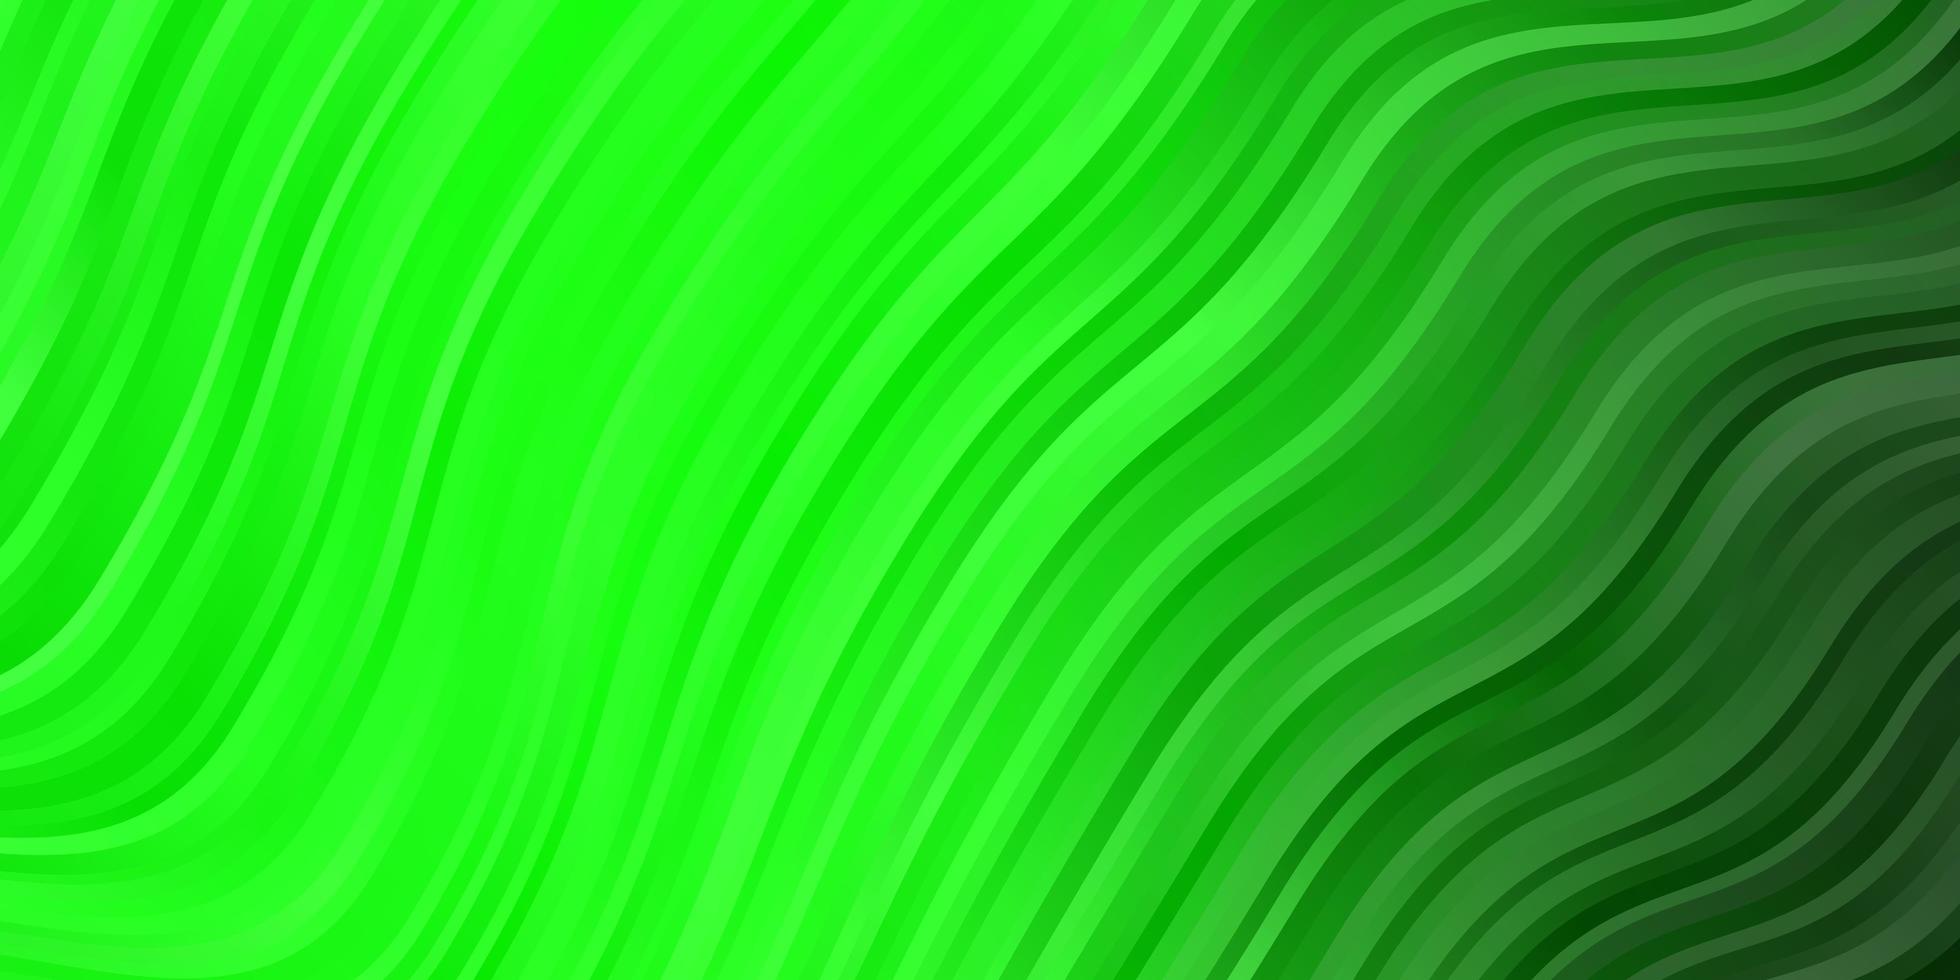 trama vettoriale verde chiaro con arco circolare.